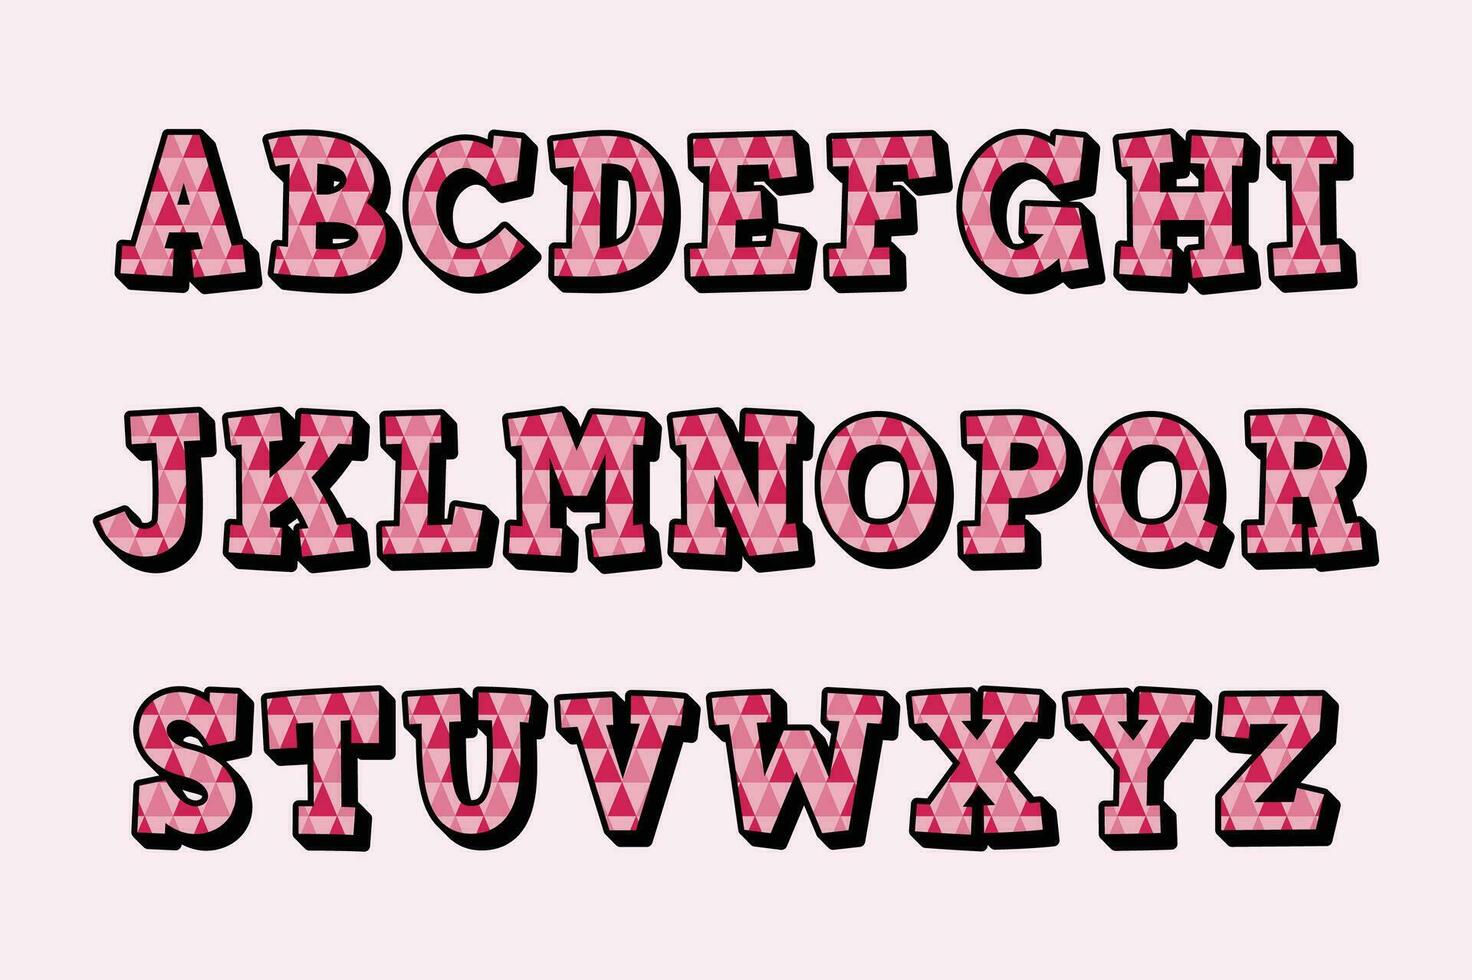 versátil coleção do Rosa ziguezagues alfabeto cartas para vários usa vetor